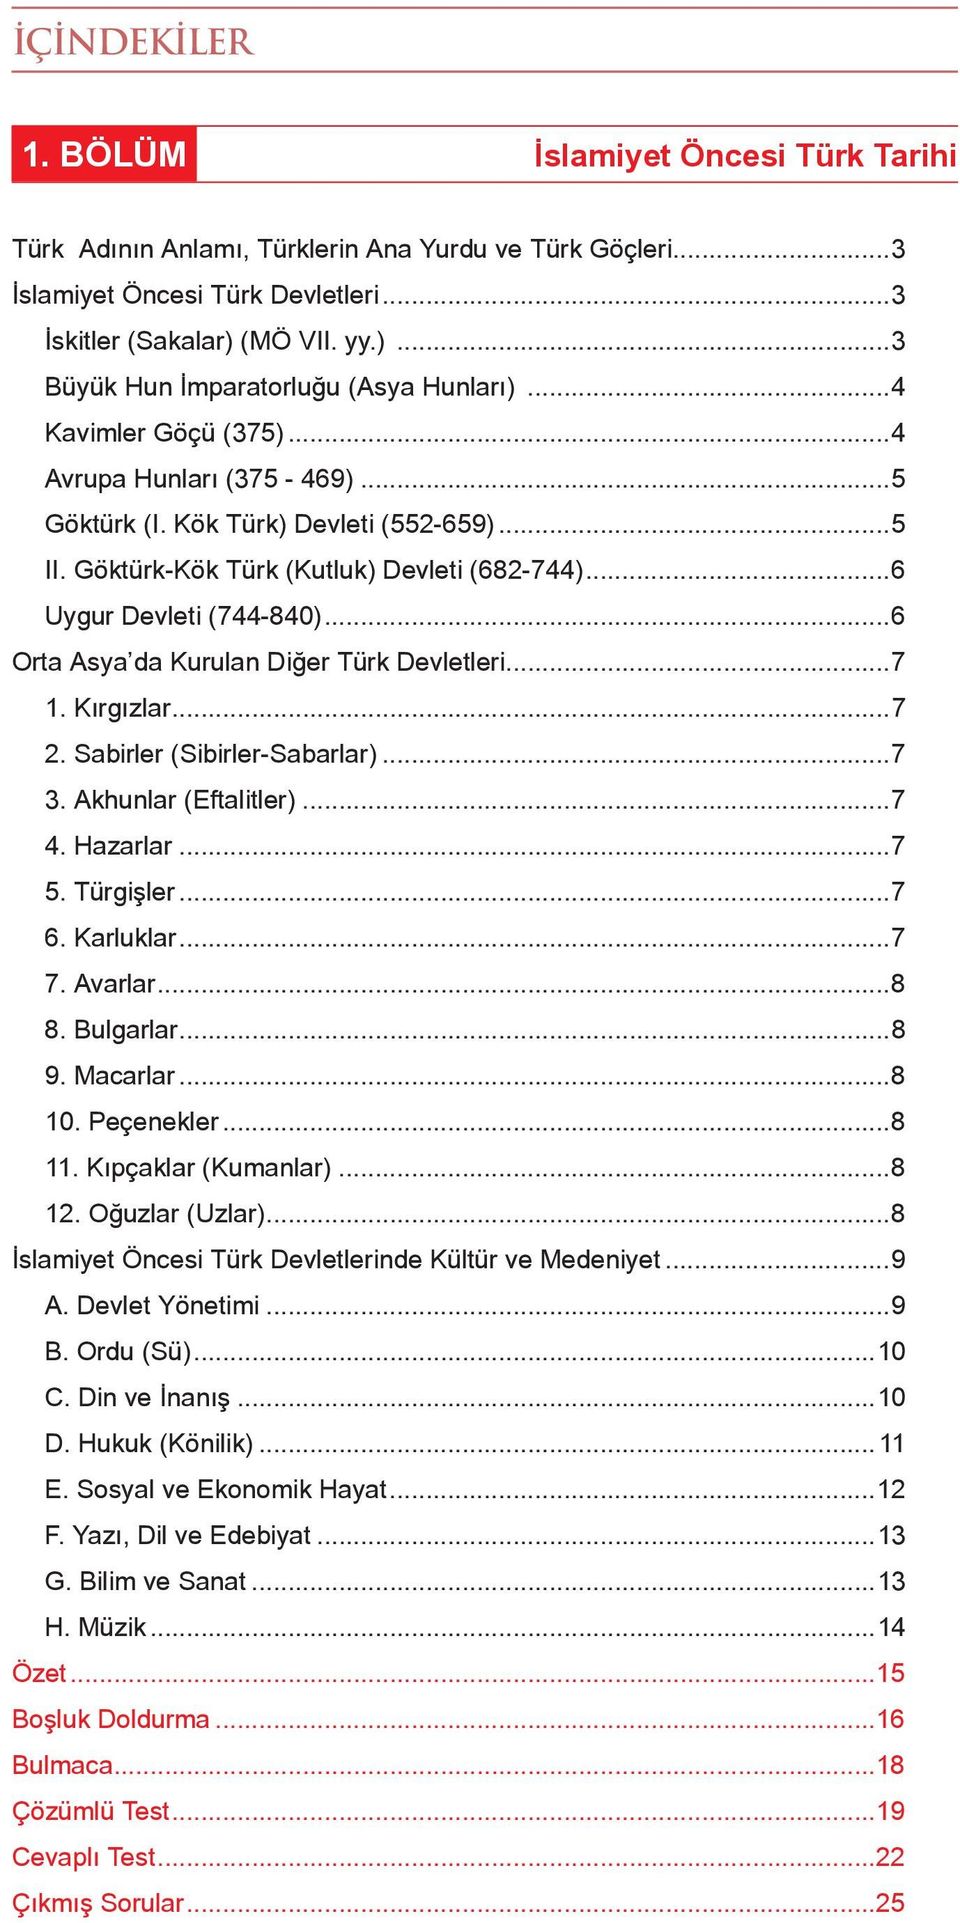 Göktürk-Kök Türk (Kutluk) Devleti (682-744)...6 Uygur Devleti (744-840)...6 Orta Asya da Kurulan Diğer Türk Devletleri...7 1. Kırgızlar...7 2. Sabirler (Sibirler-Sabarlar)...7 3.